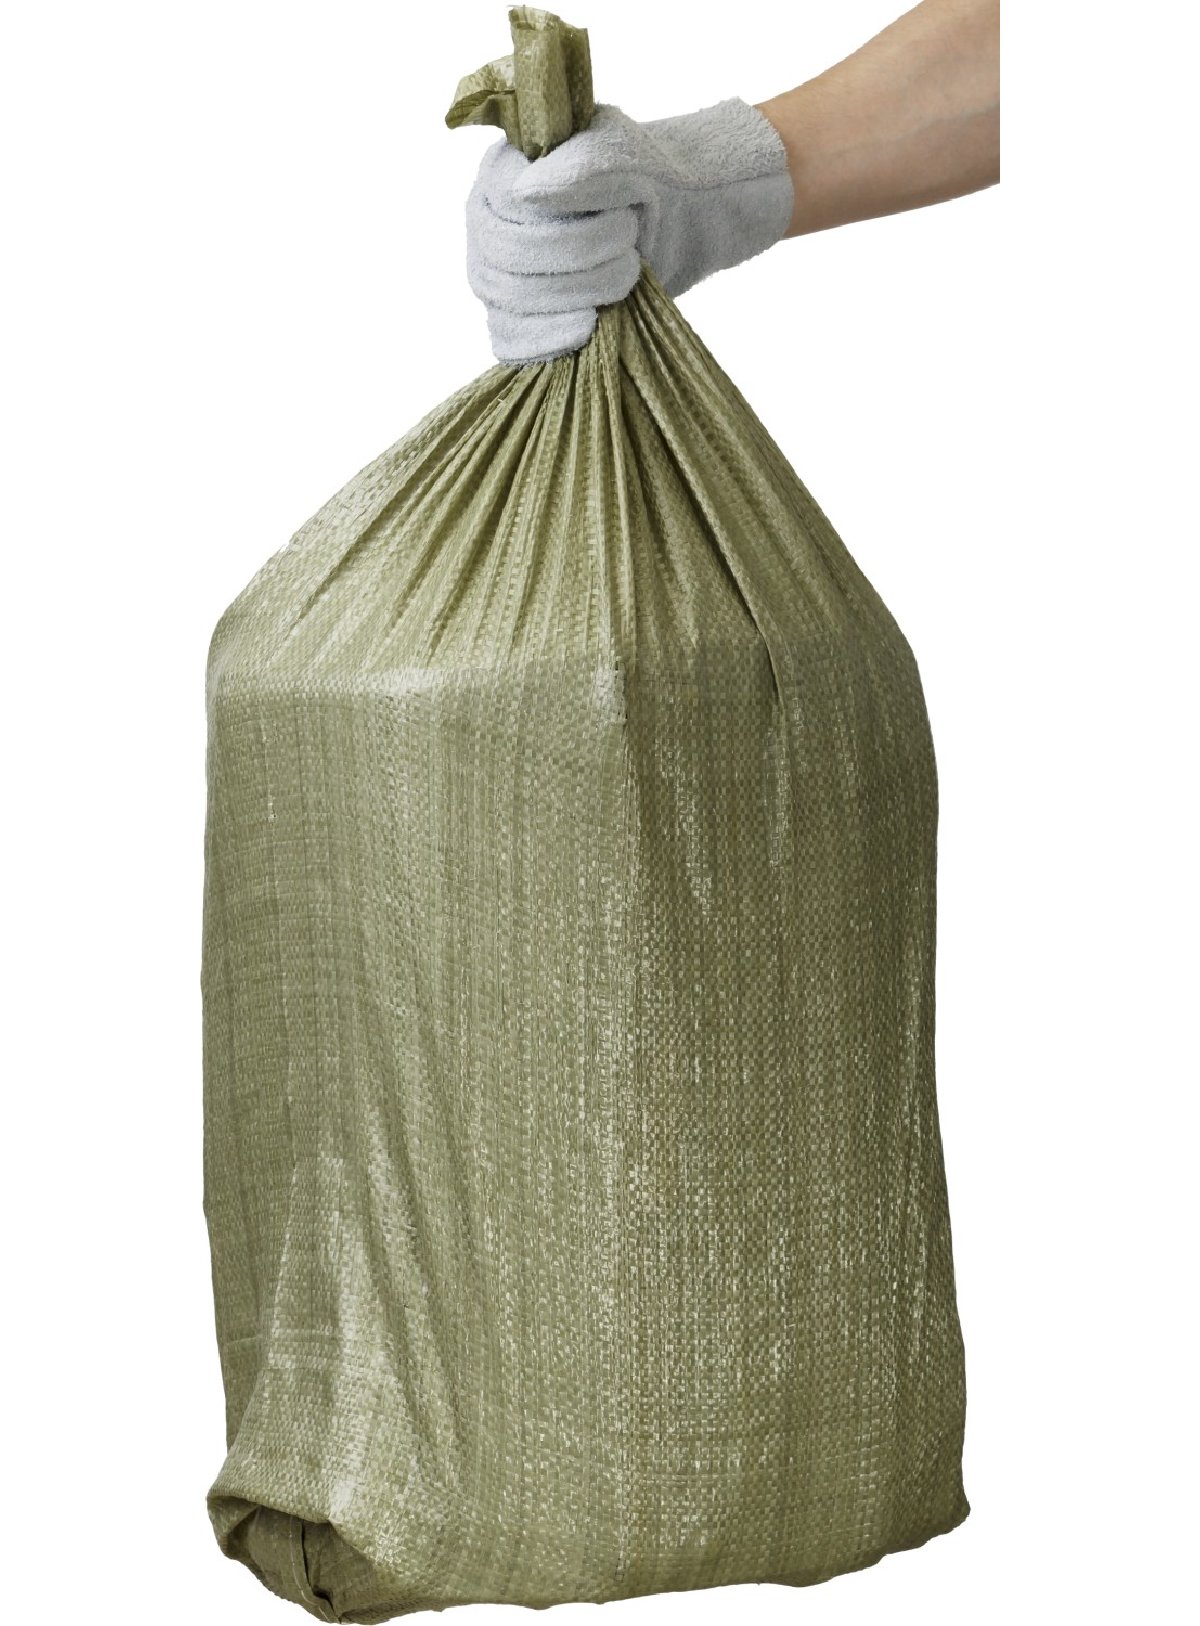 Строительные мусорные мешки STAYER 95х55см, 70л (40кг), 10шт, плетеные хозяйственные, зеленые, HEAVY DUTY, (39158-95)